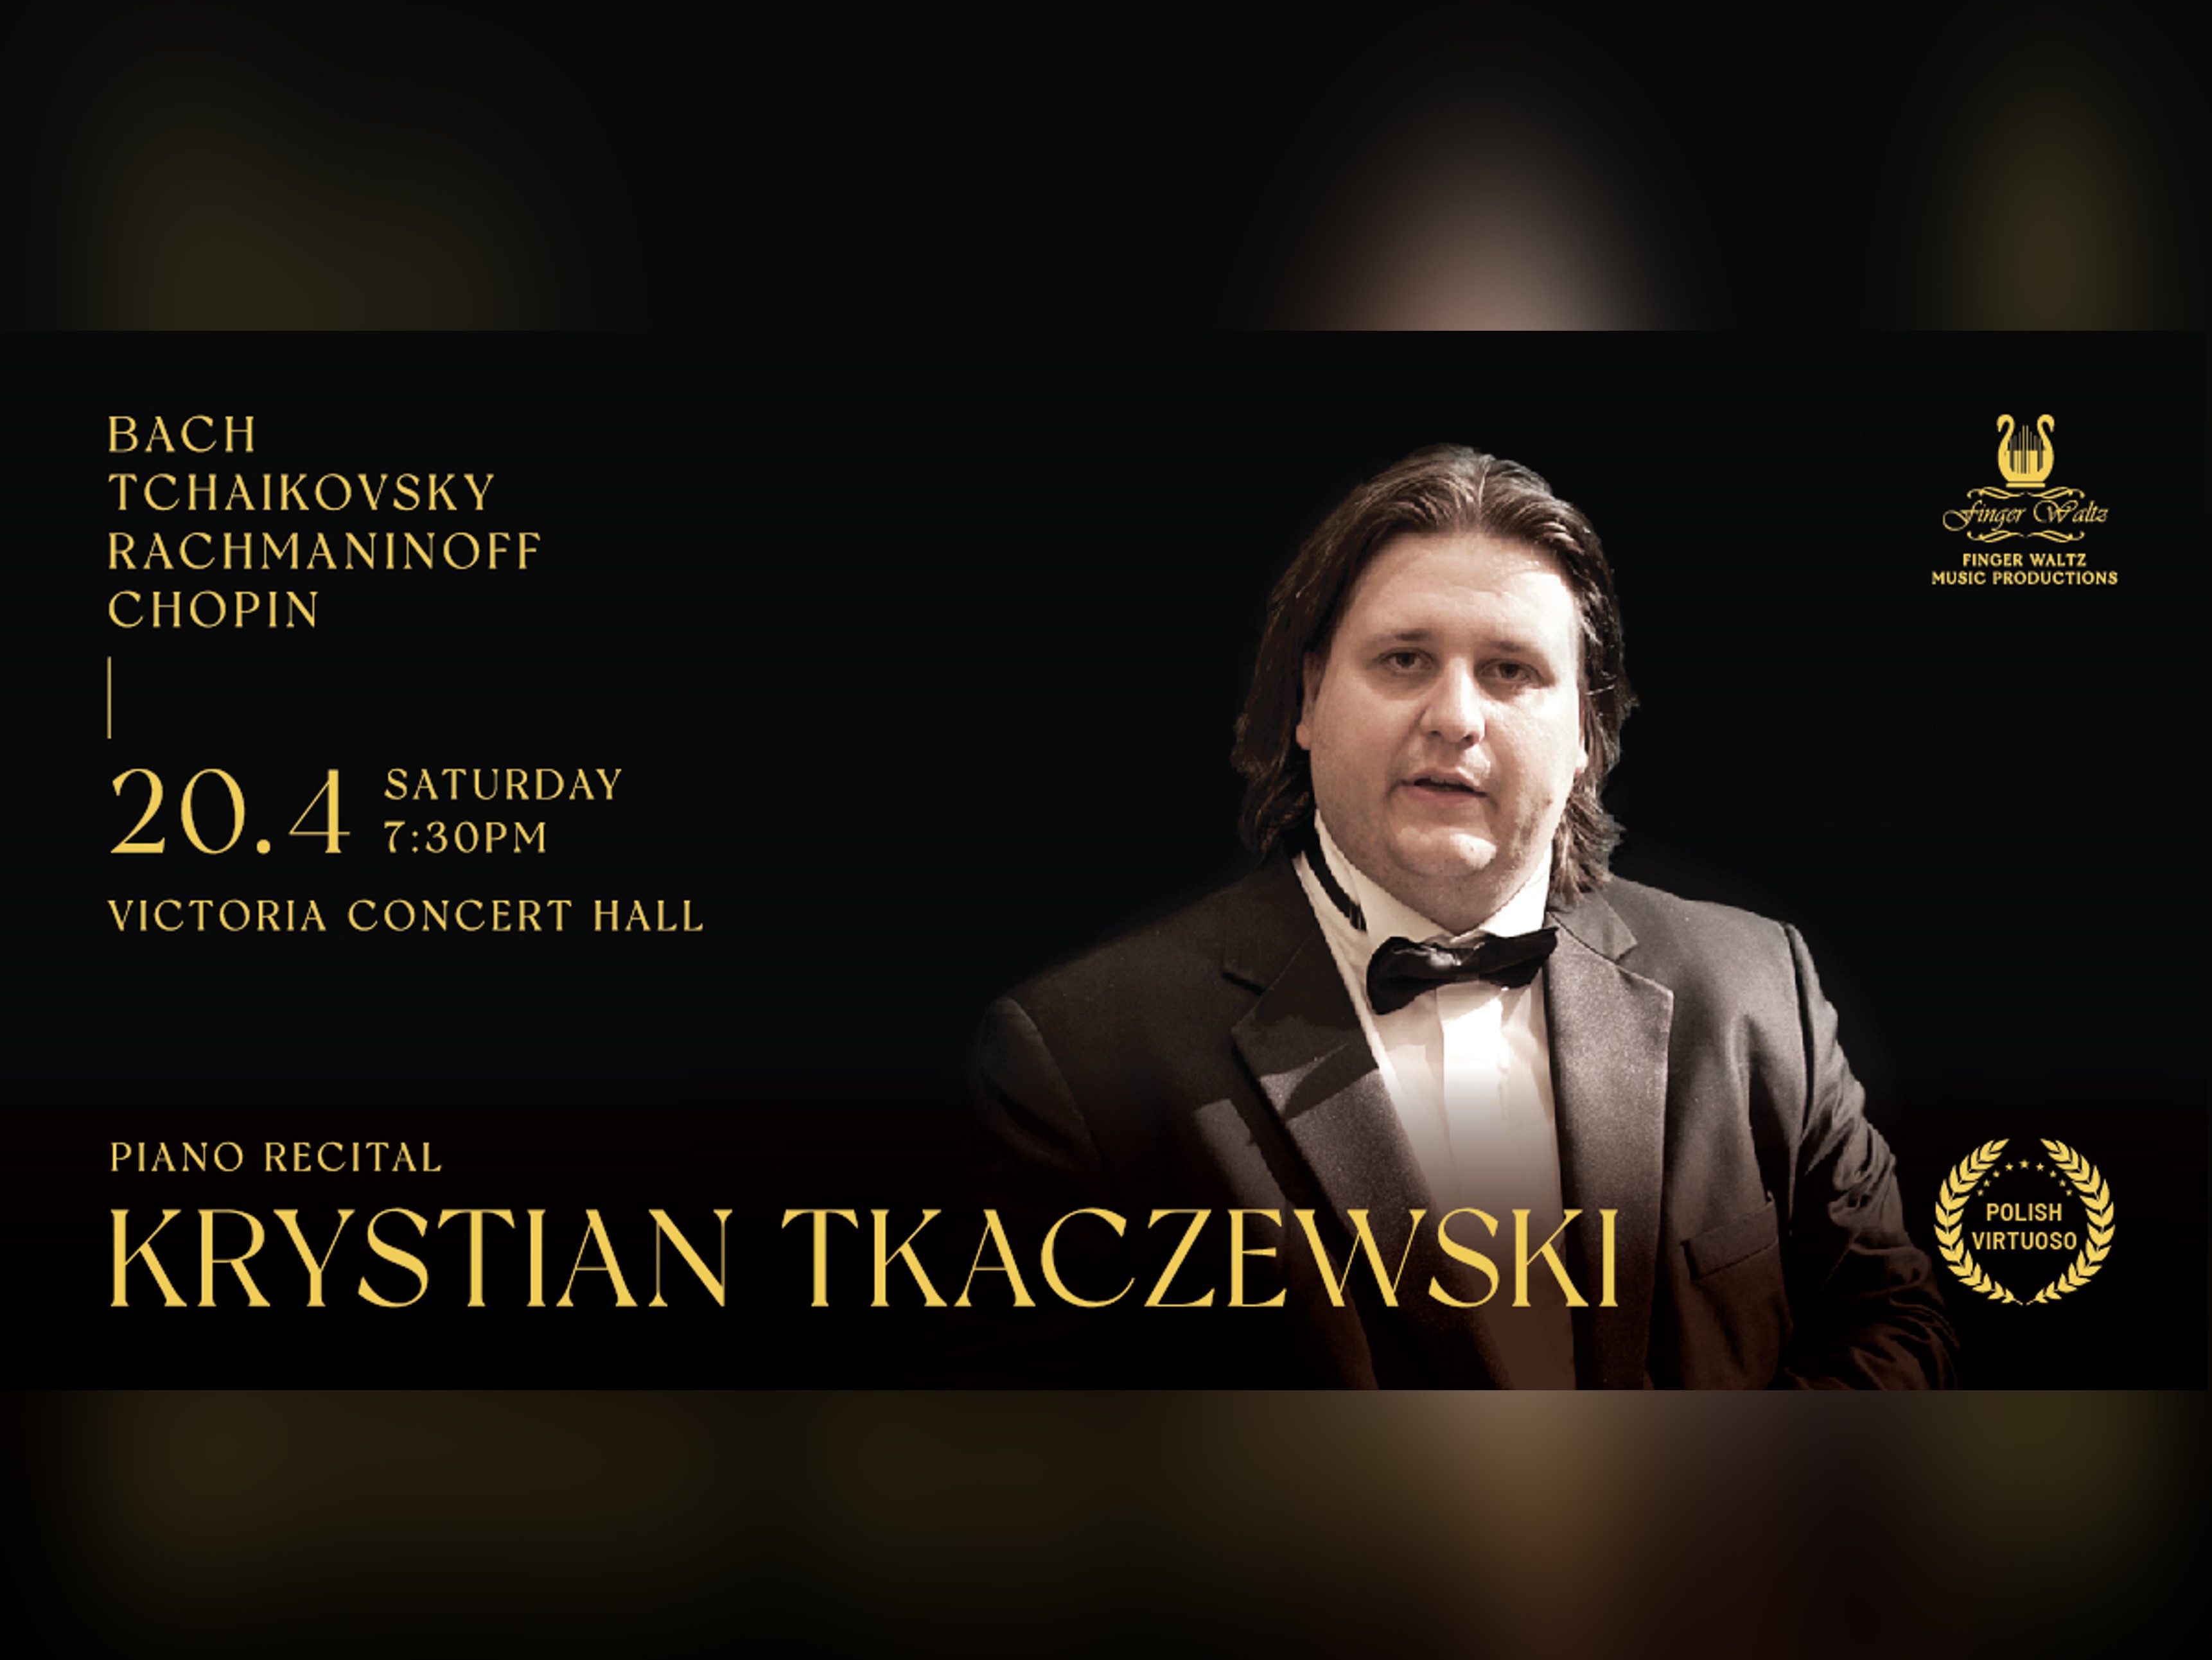 Piano Recital by Krystian Tkaczewski: Bach | Tchaikovsky | Rachmaninoff | Chopin